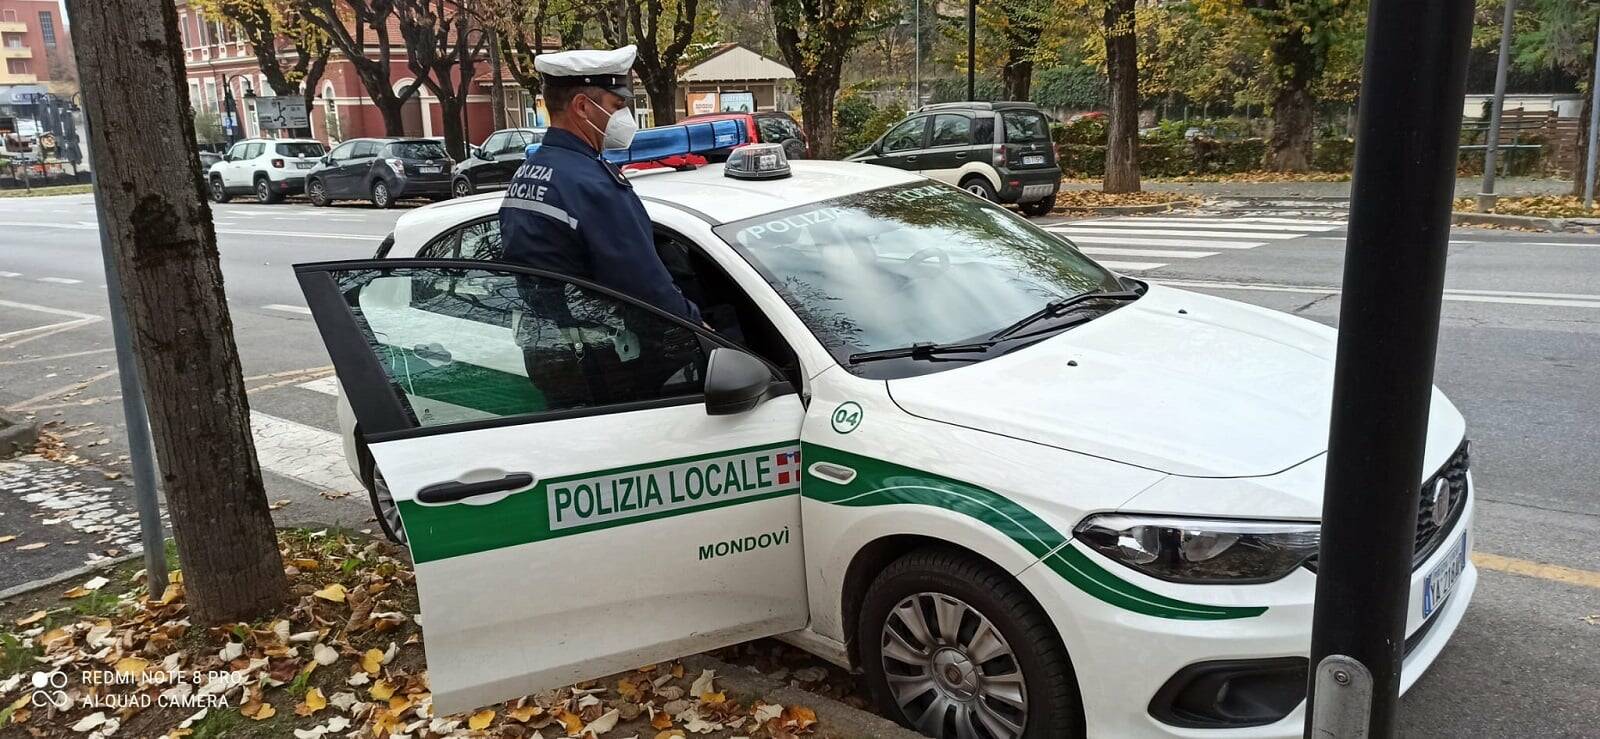 Donna investita da un veicolo a Mondovì: la polizia cerca testimoni